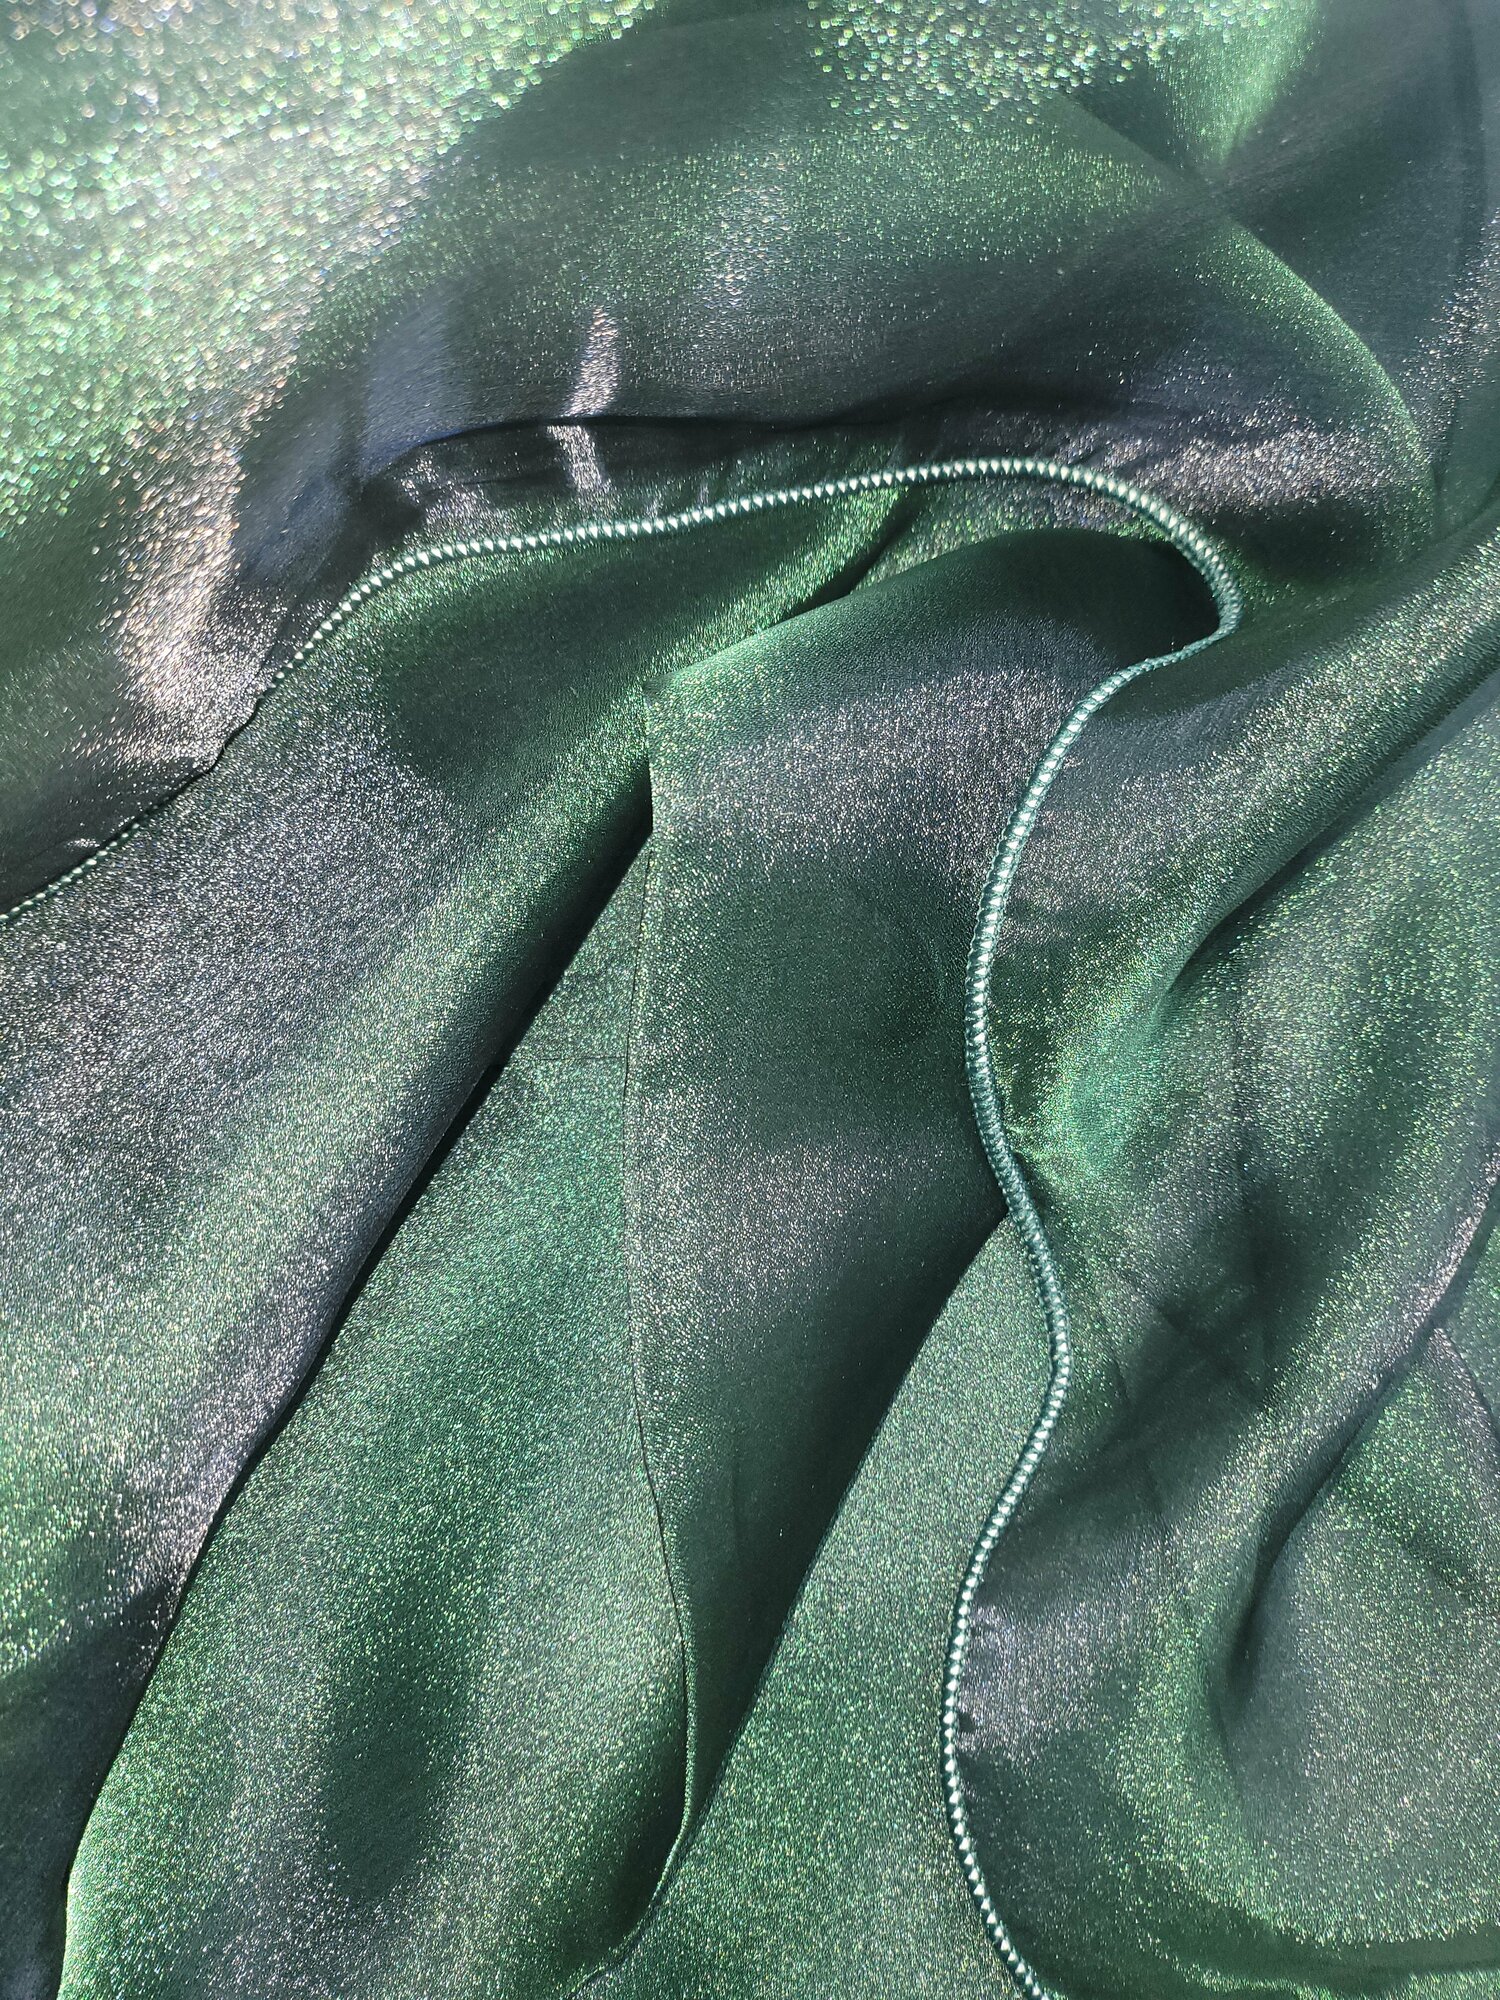 Тюль для комнаты органза однотонная 250 см высота 150 см ширина ина шторной ленте цвет насыщенный зеленый с блеском